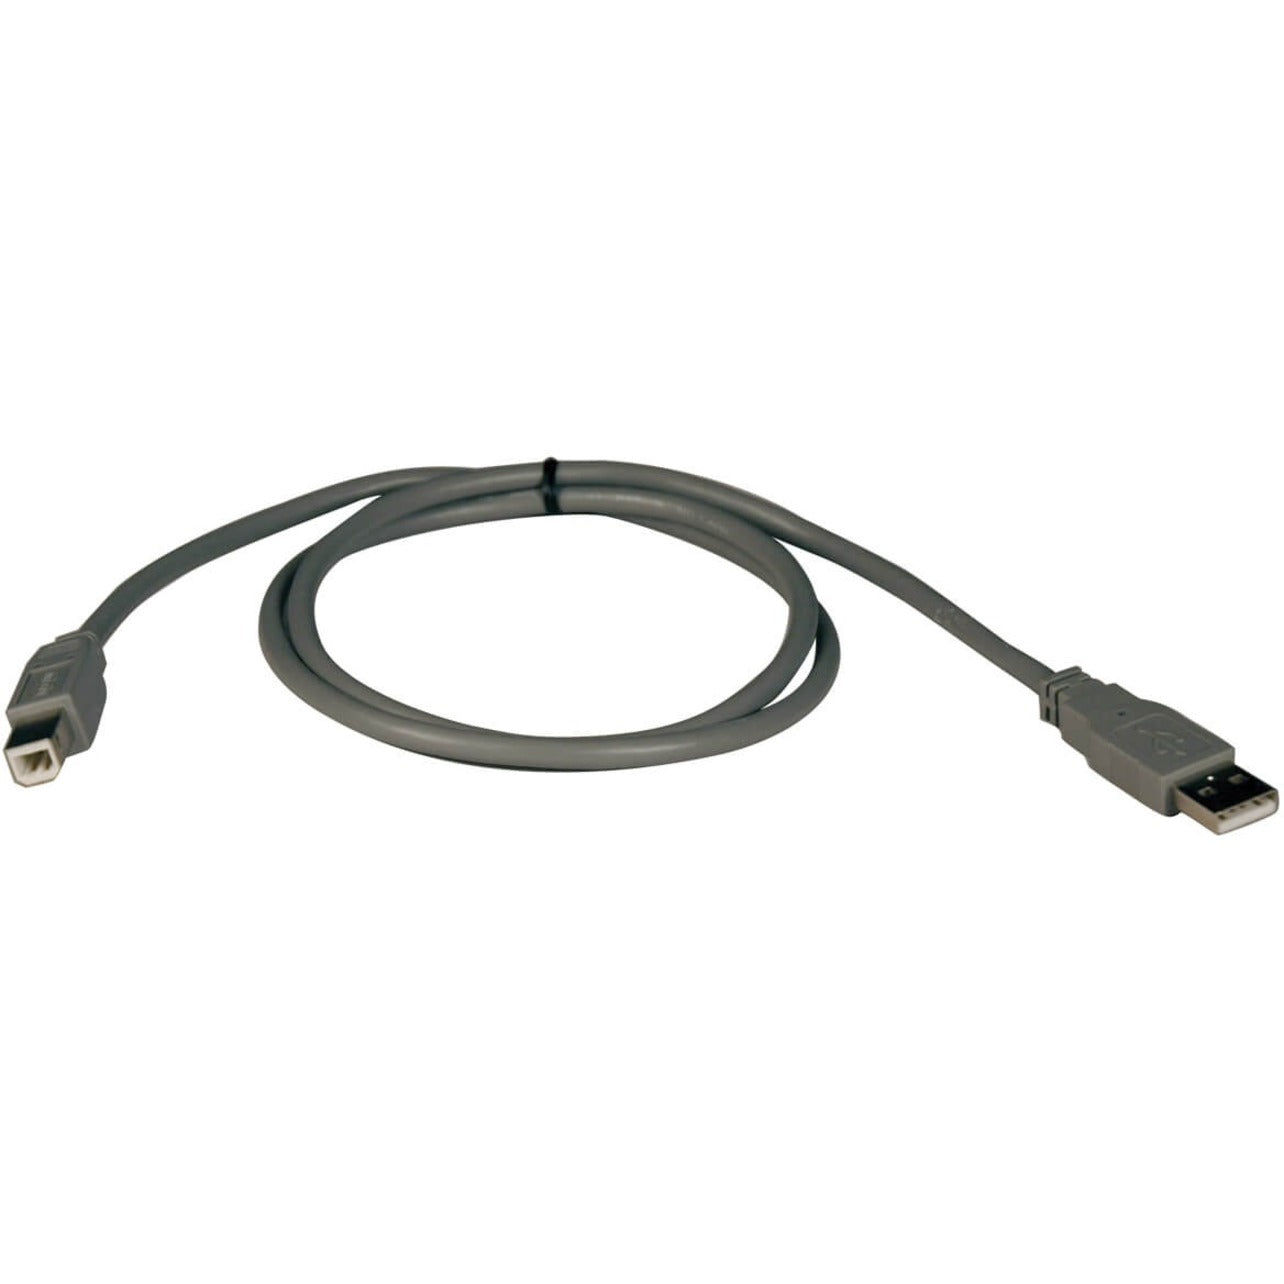 Marca: Tripp Lite  Cable USB 2.0 Tripp Lite U021-003 3 pies Conductor de Cobre Negro